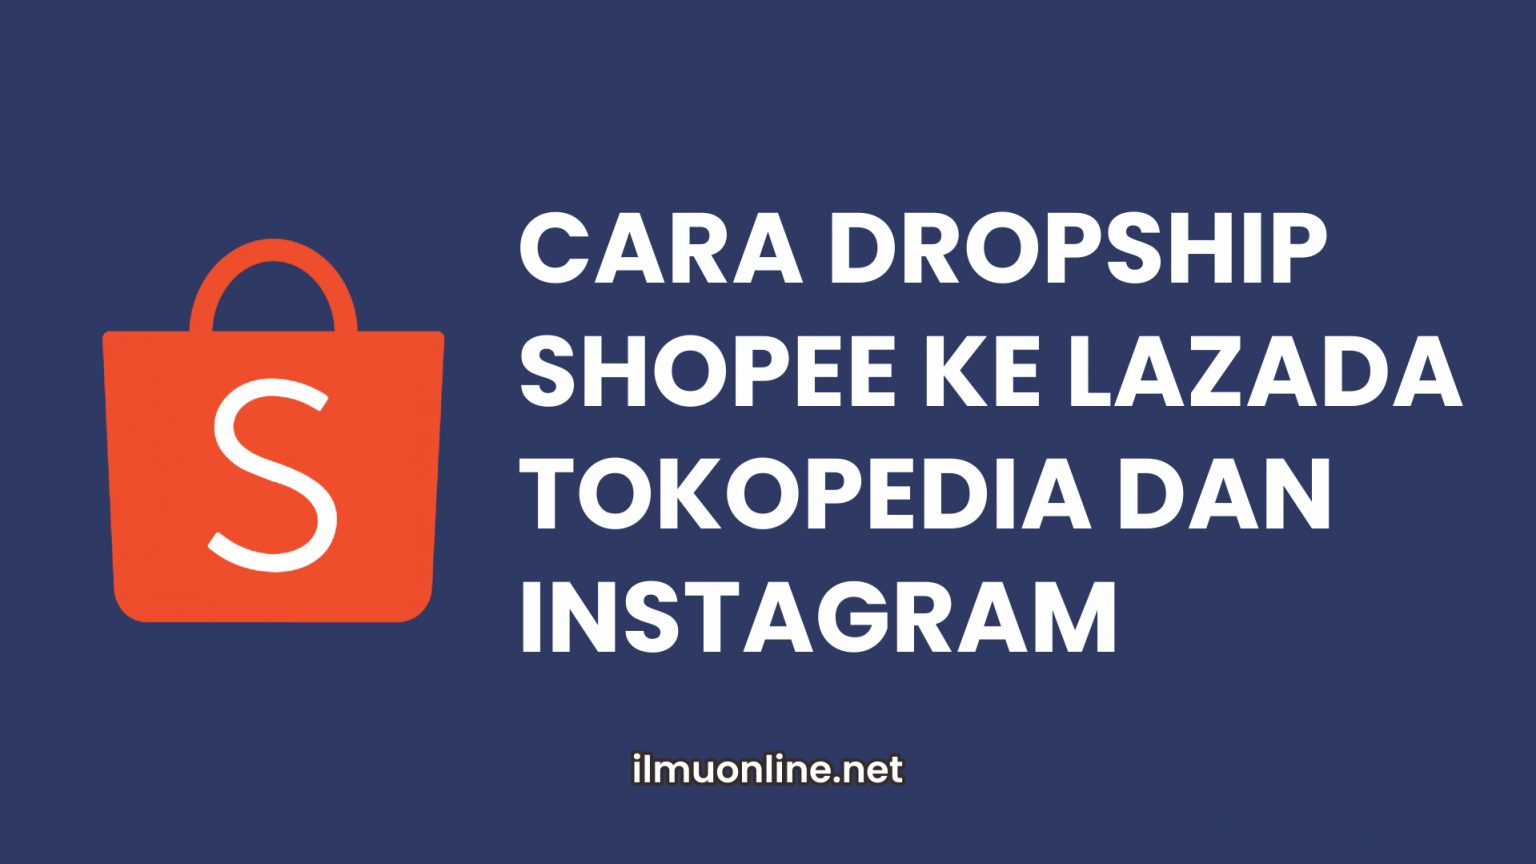 √ Cara Dropship Shopee ke Lazada, Tokopedia dan Instagram